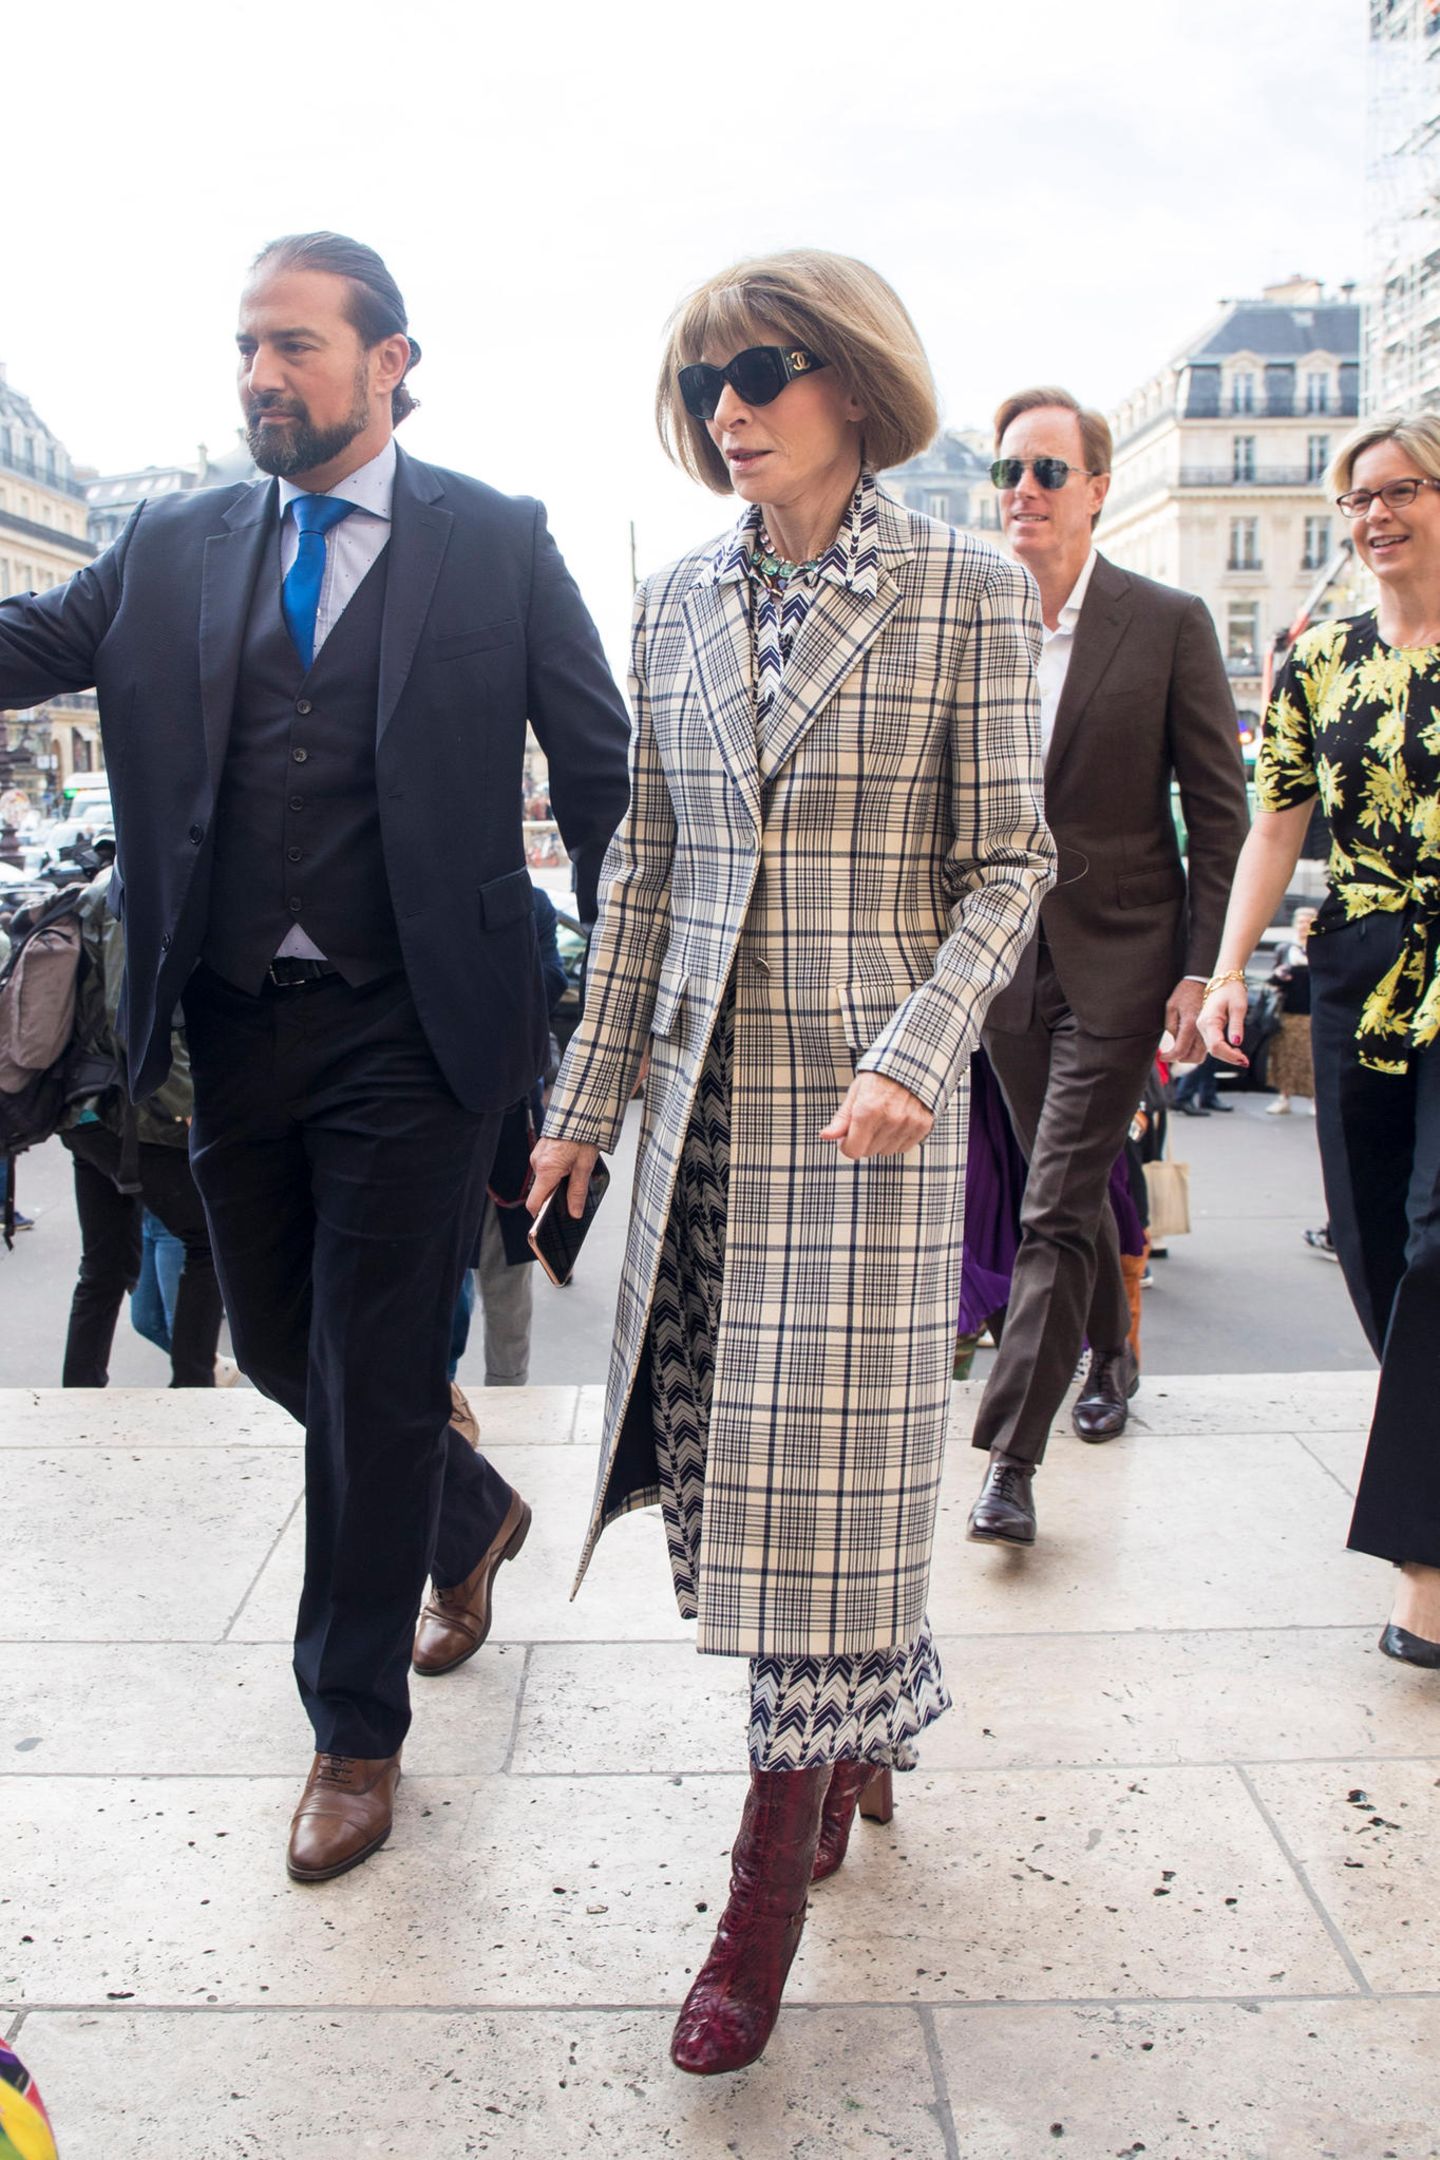 Die Grand Dame der internationalen Modeszene ist da! Vogue-Chefredakteurin Anna Wintour kommt pünktlich zur Modenschau von Stella McCartney.